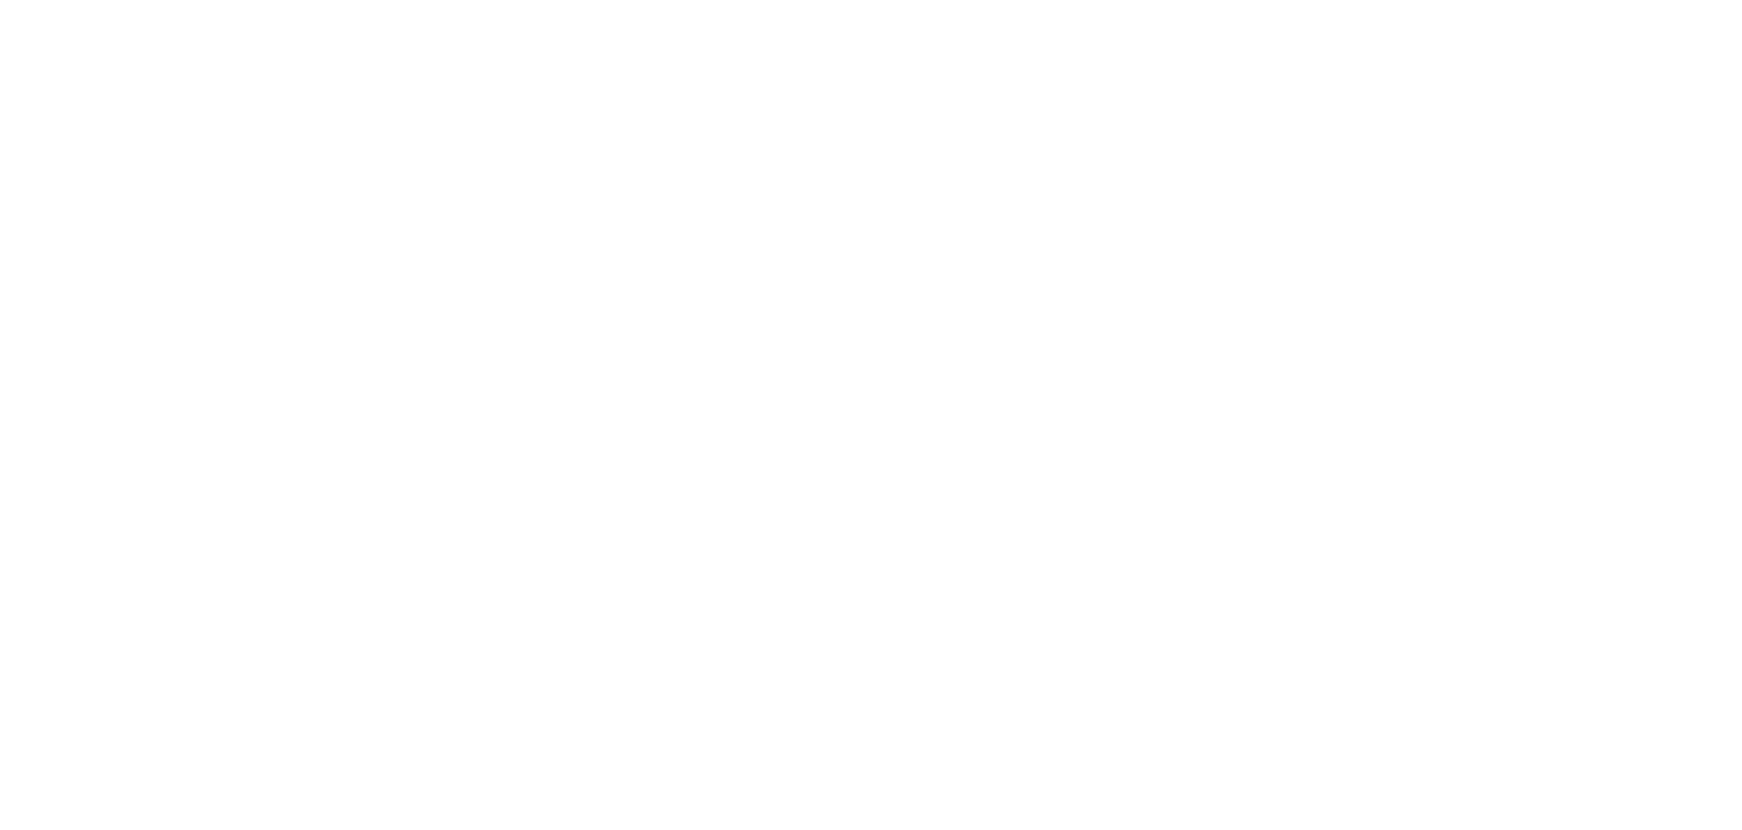 BSA Ahmad Bin Hezeem & Associates LLP